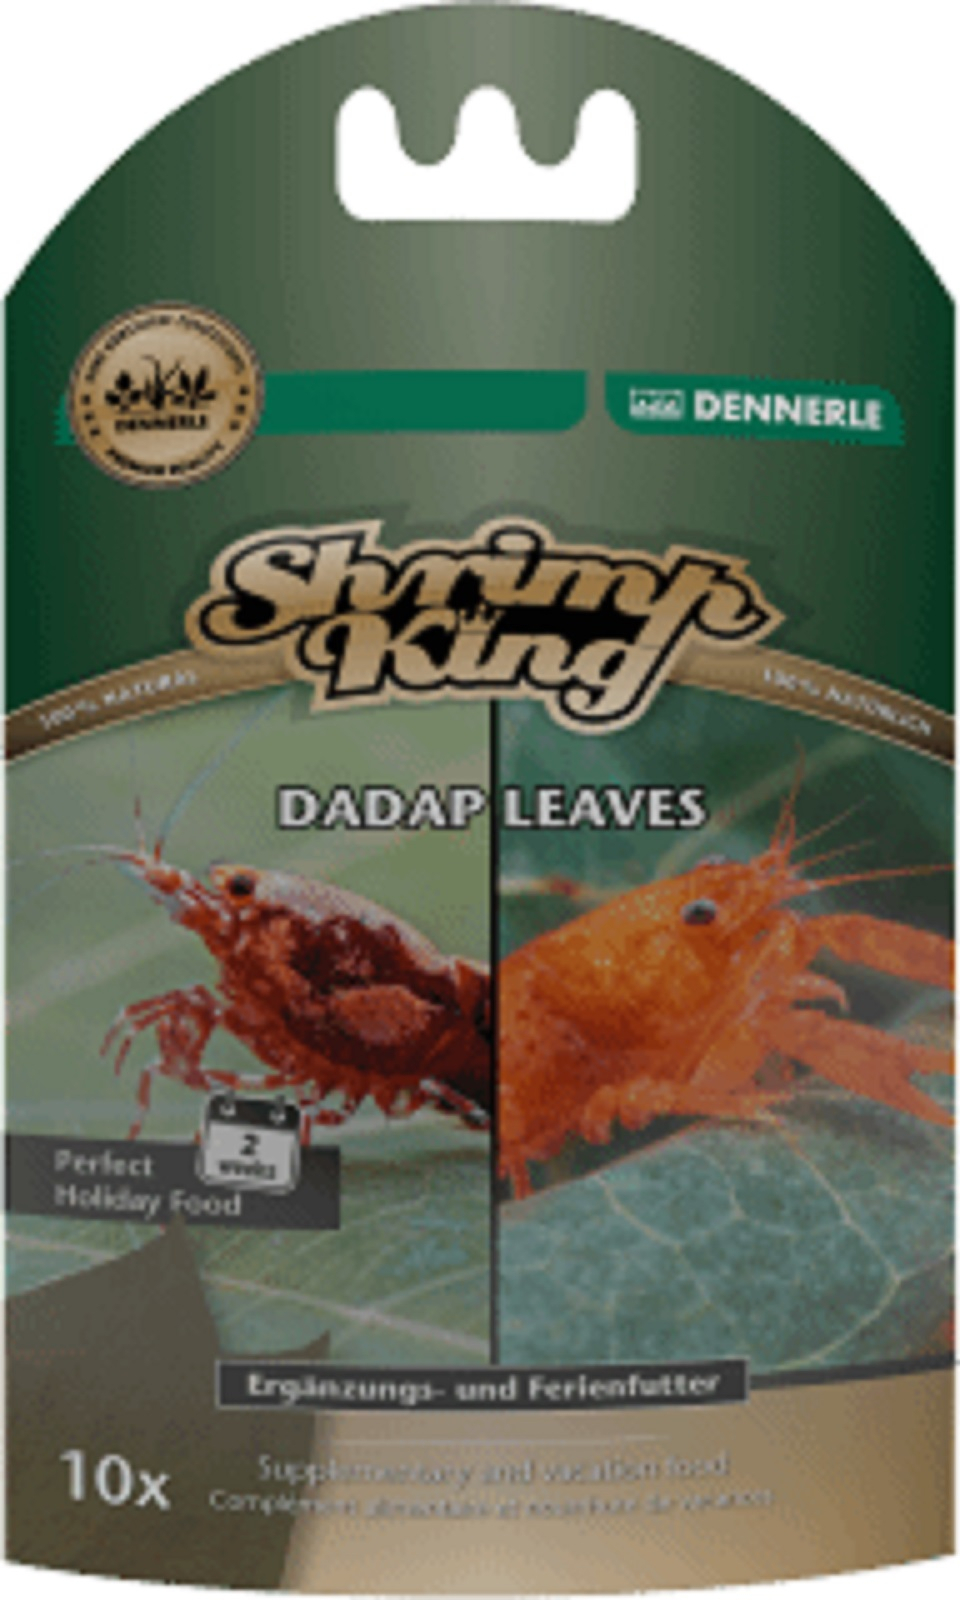 Dennerle Shrimp King Dadap Leaves, complementi alimentari gamberetti e gamberi